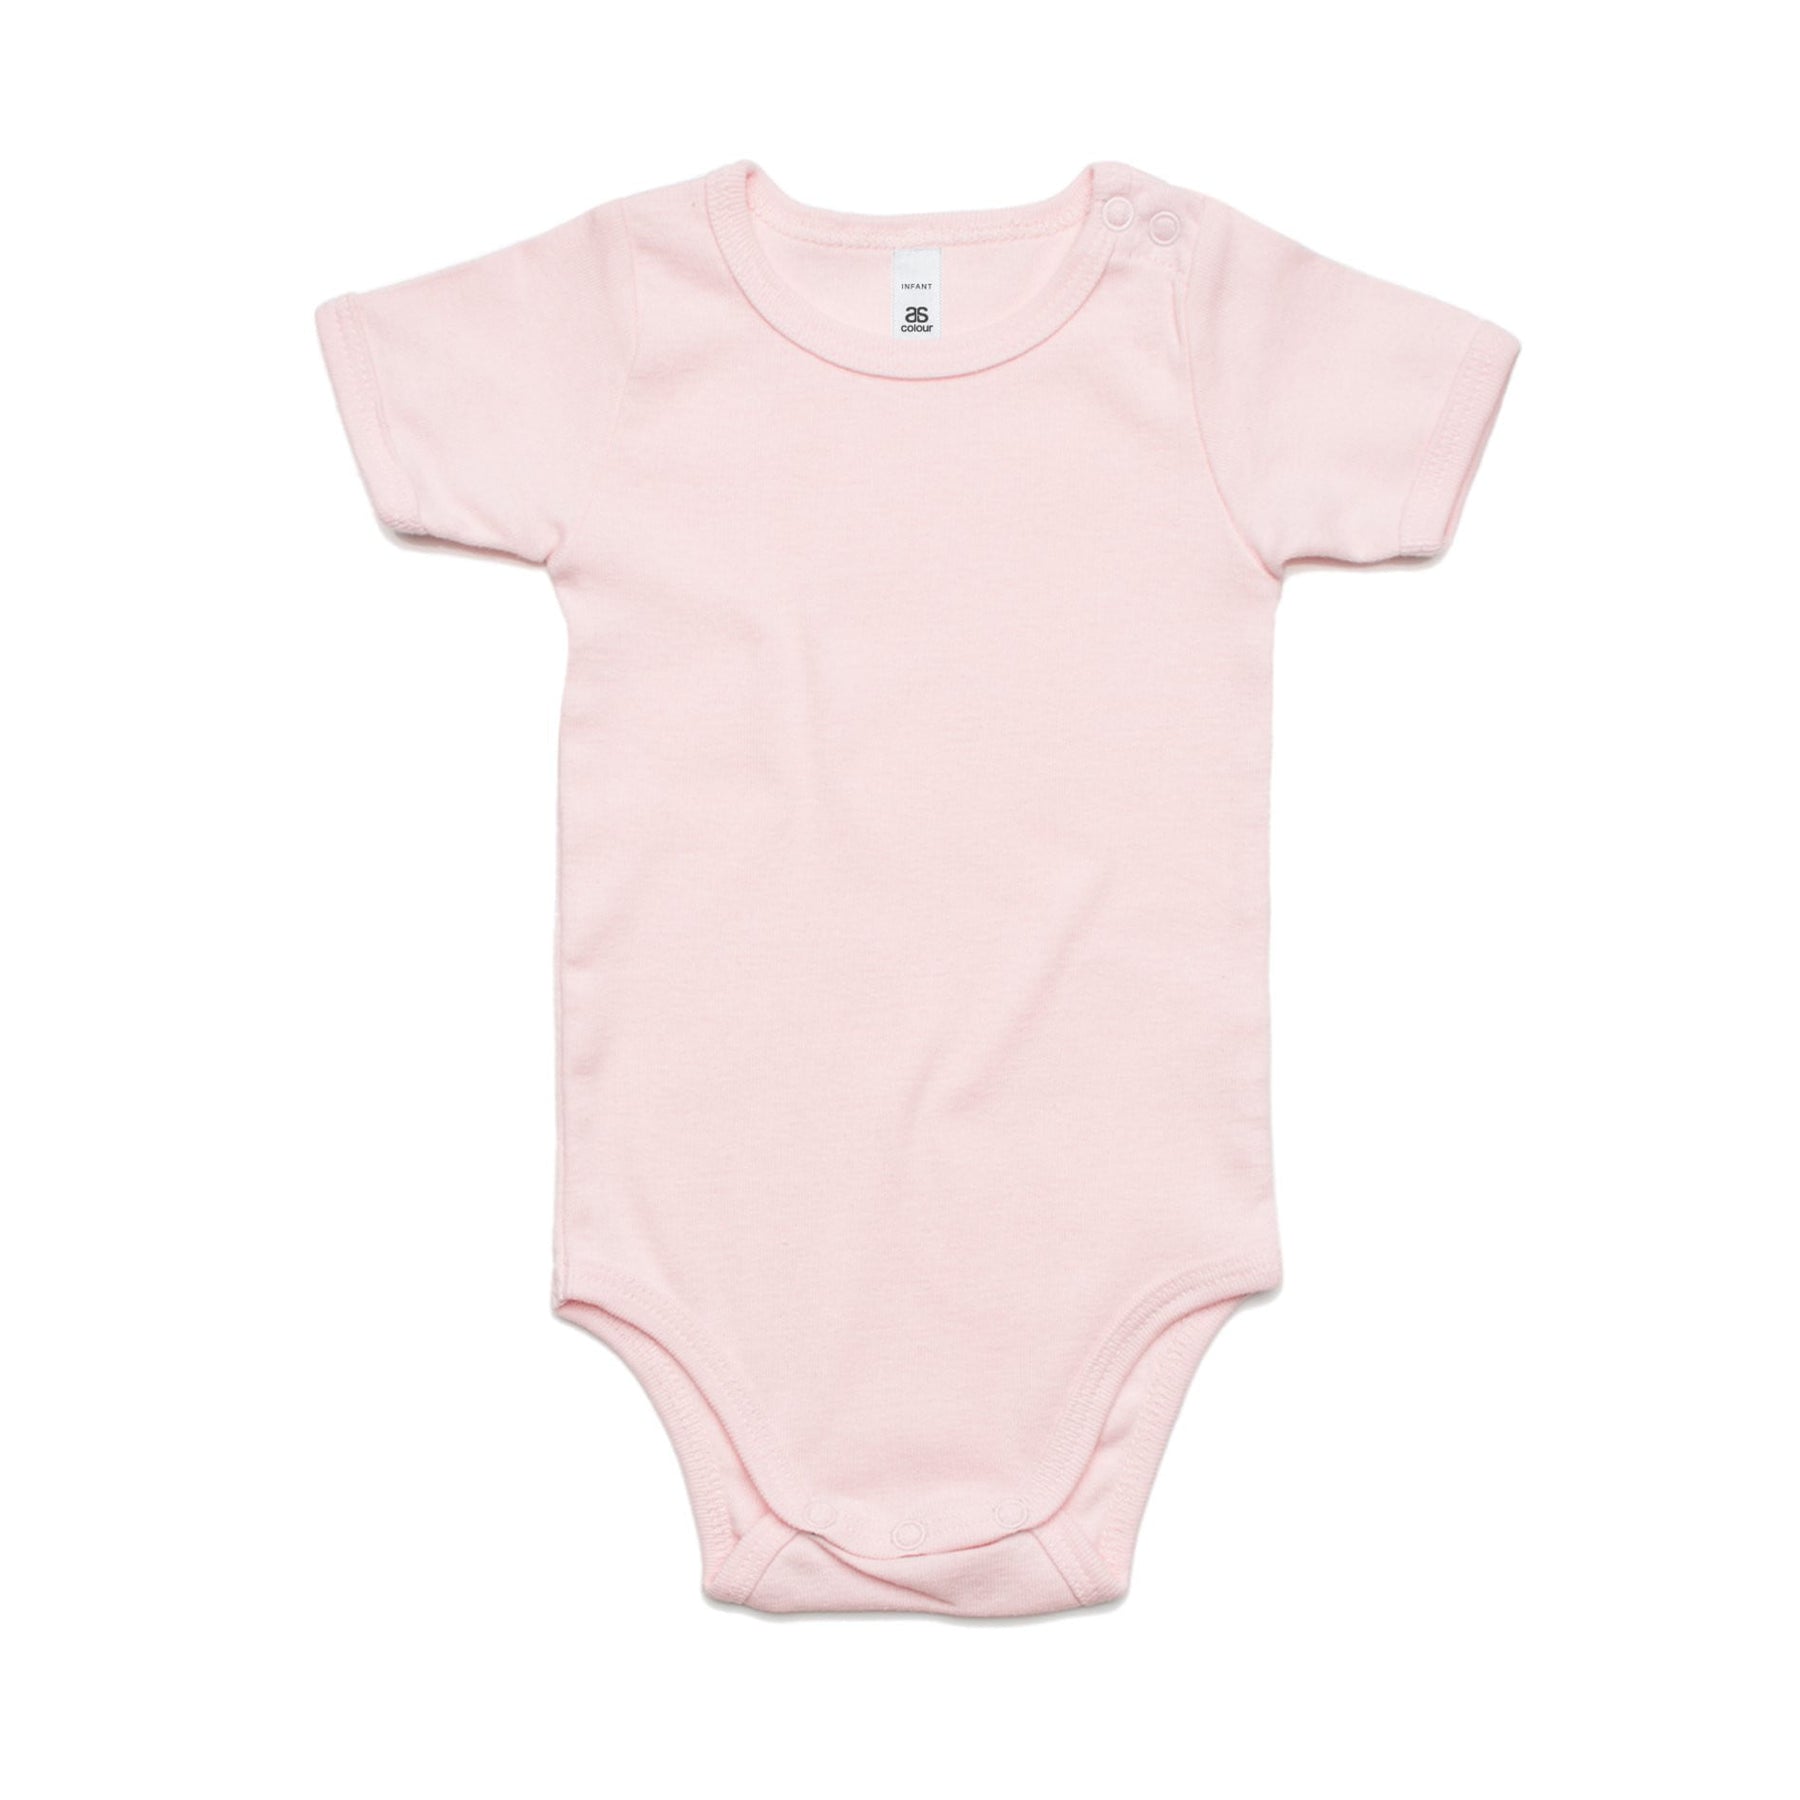 Buy ascolour infant mini me one piece 3003 online at Machines Plus